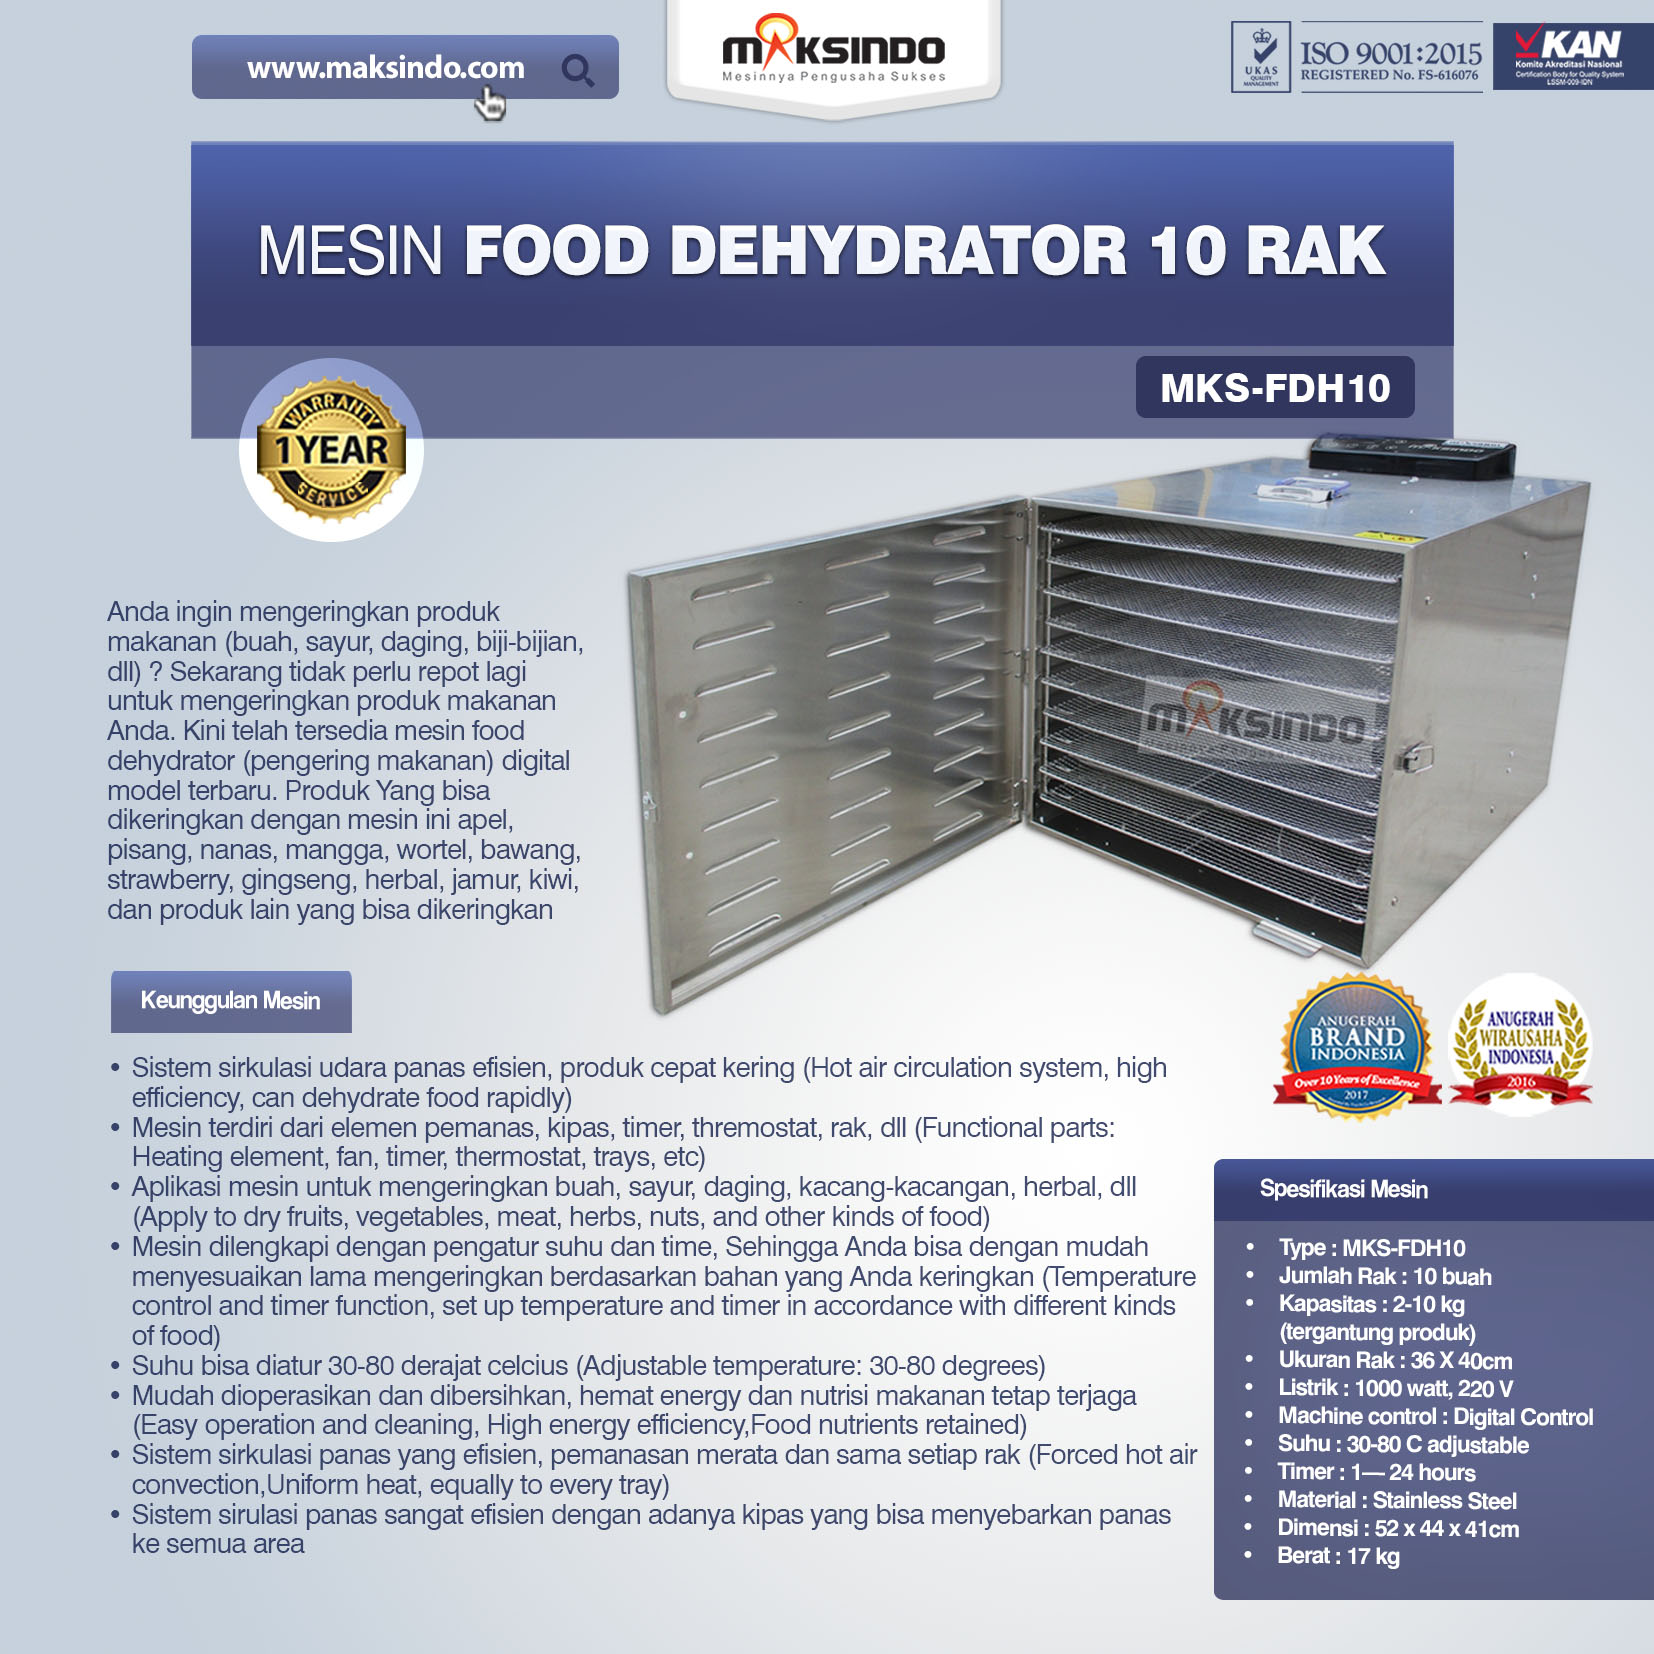 Jual Mesin Food Dehydrator 10 Rak (FDH10) di Semarang